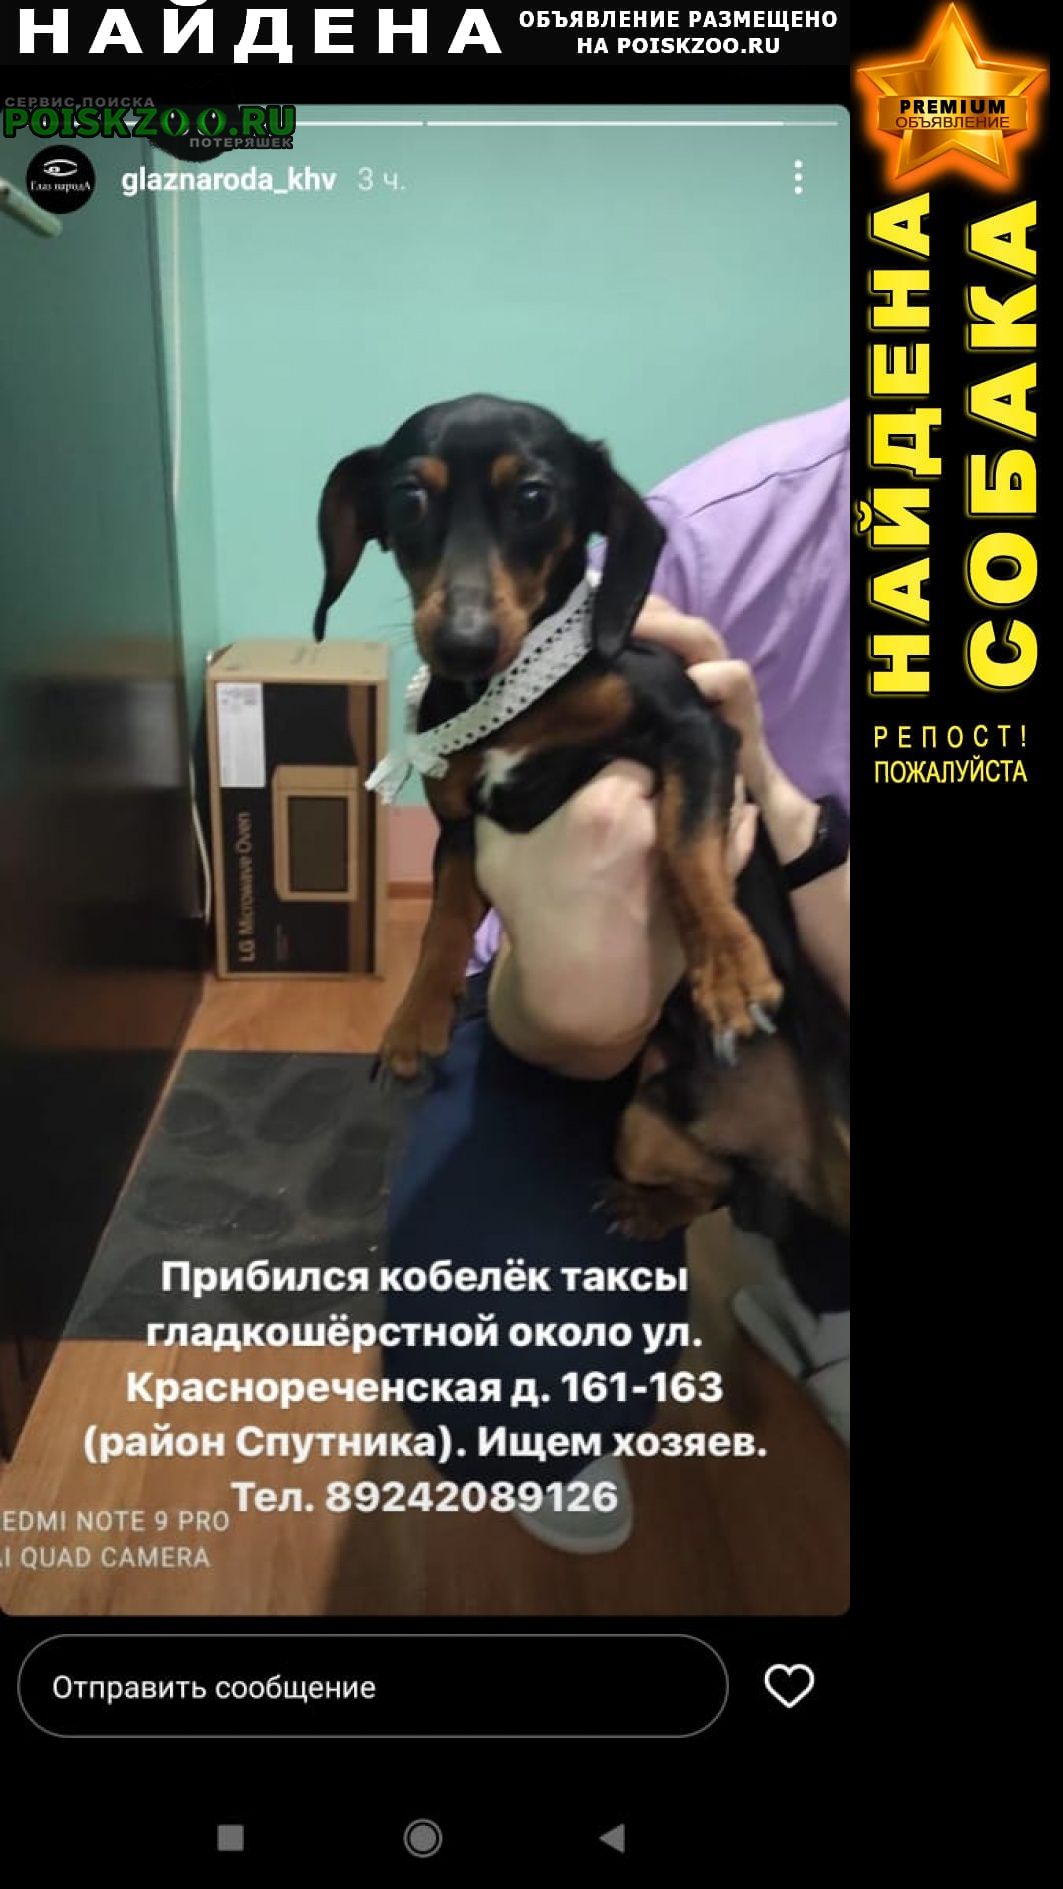 Найдена собака кобель таксы, в районе красноречен Хабаровск